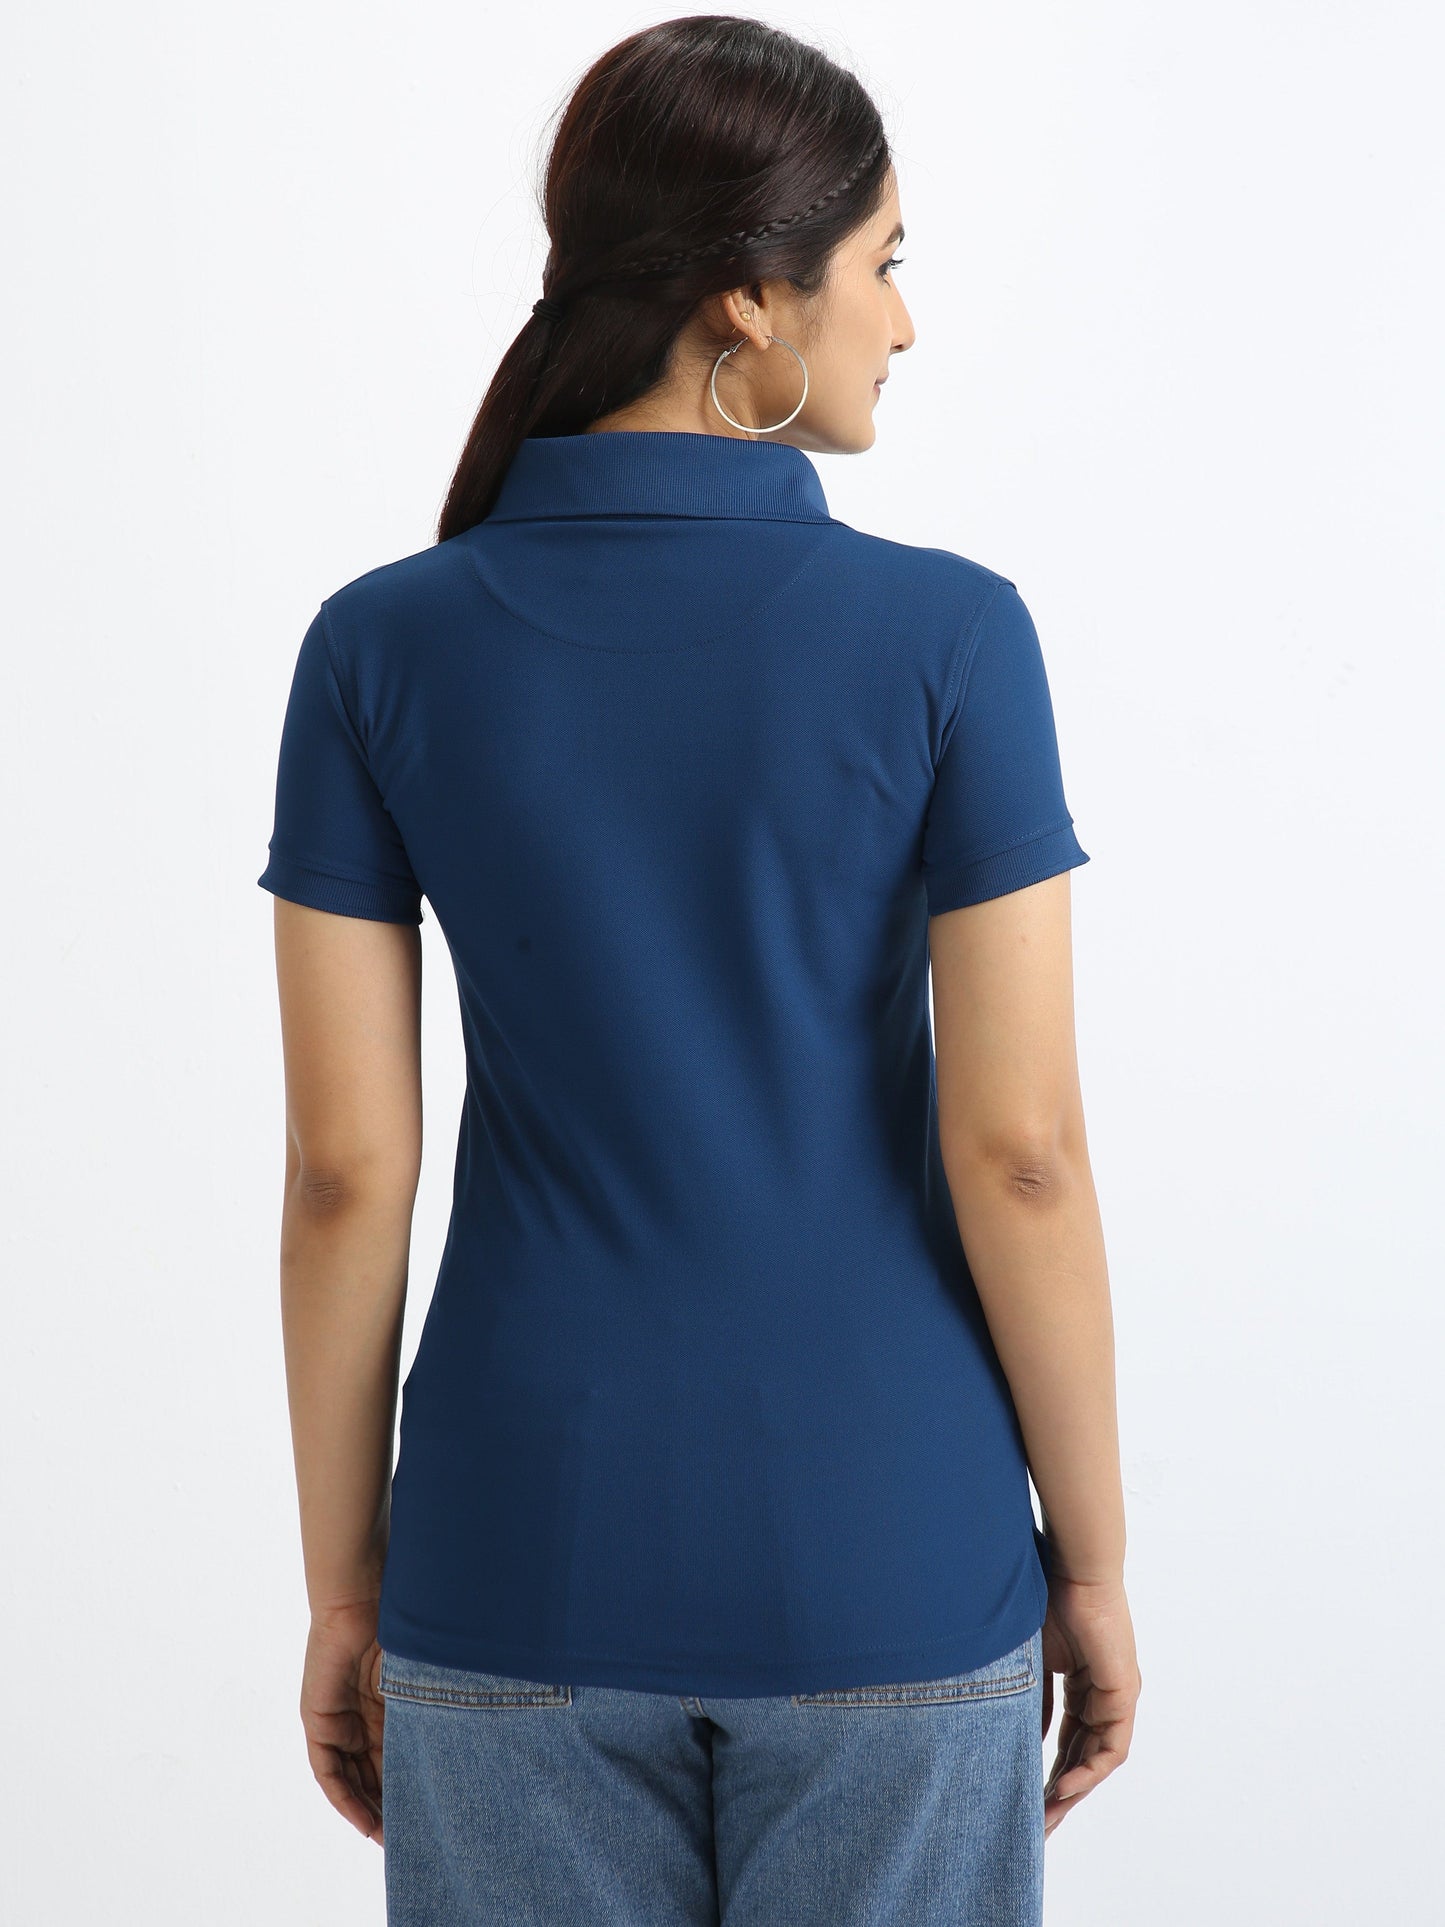 Harbour Blue Women's Polo T-shirt